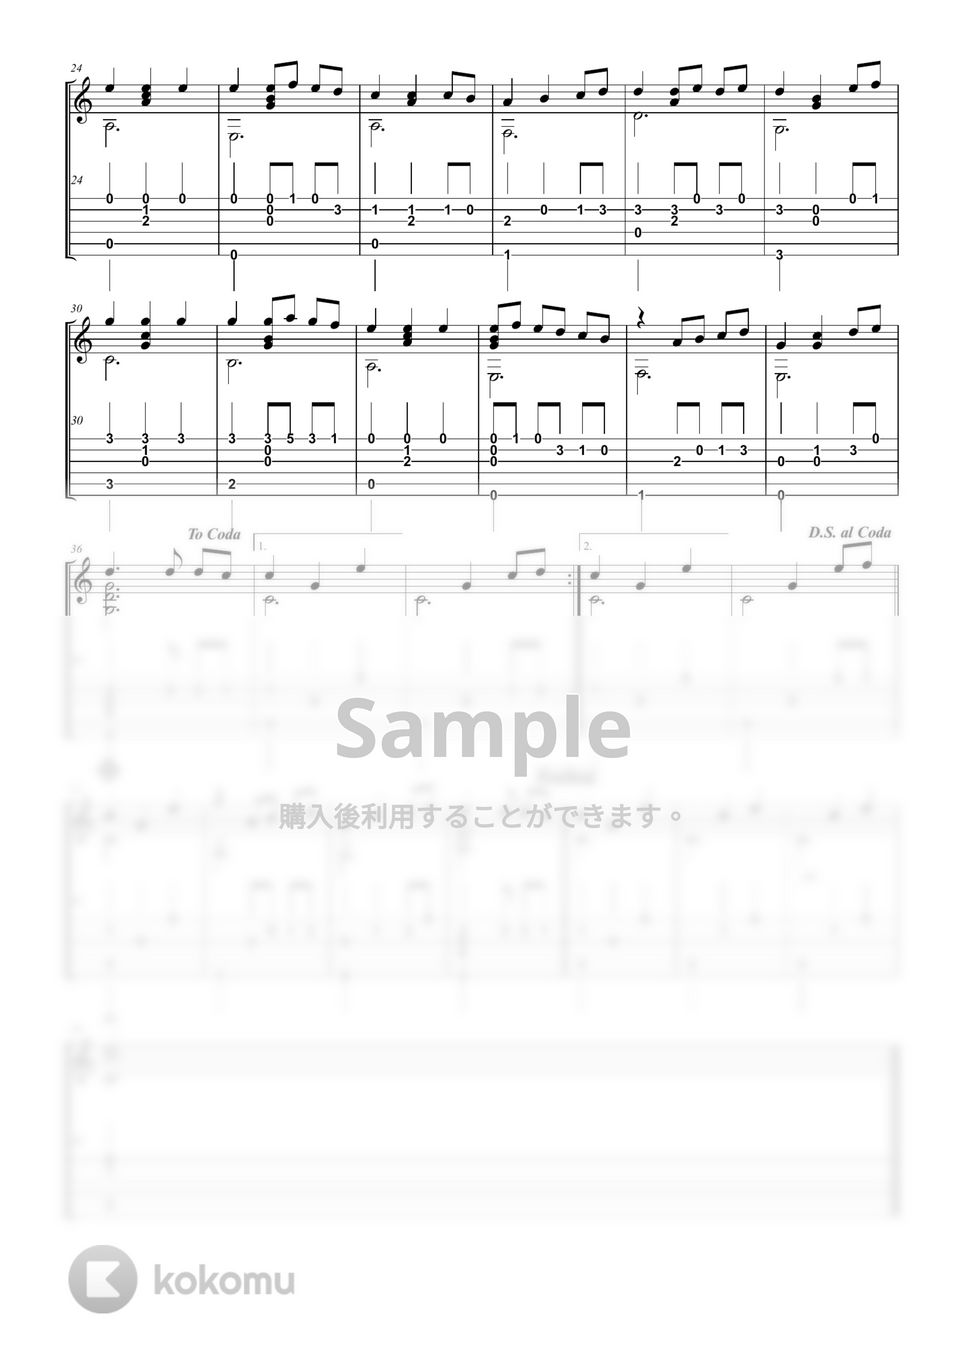 木村弓 - 【ソロギター楽譜】いつも何度でも【TAB譜】 by shindome